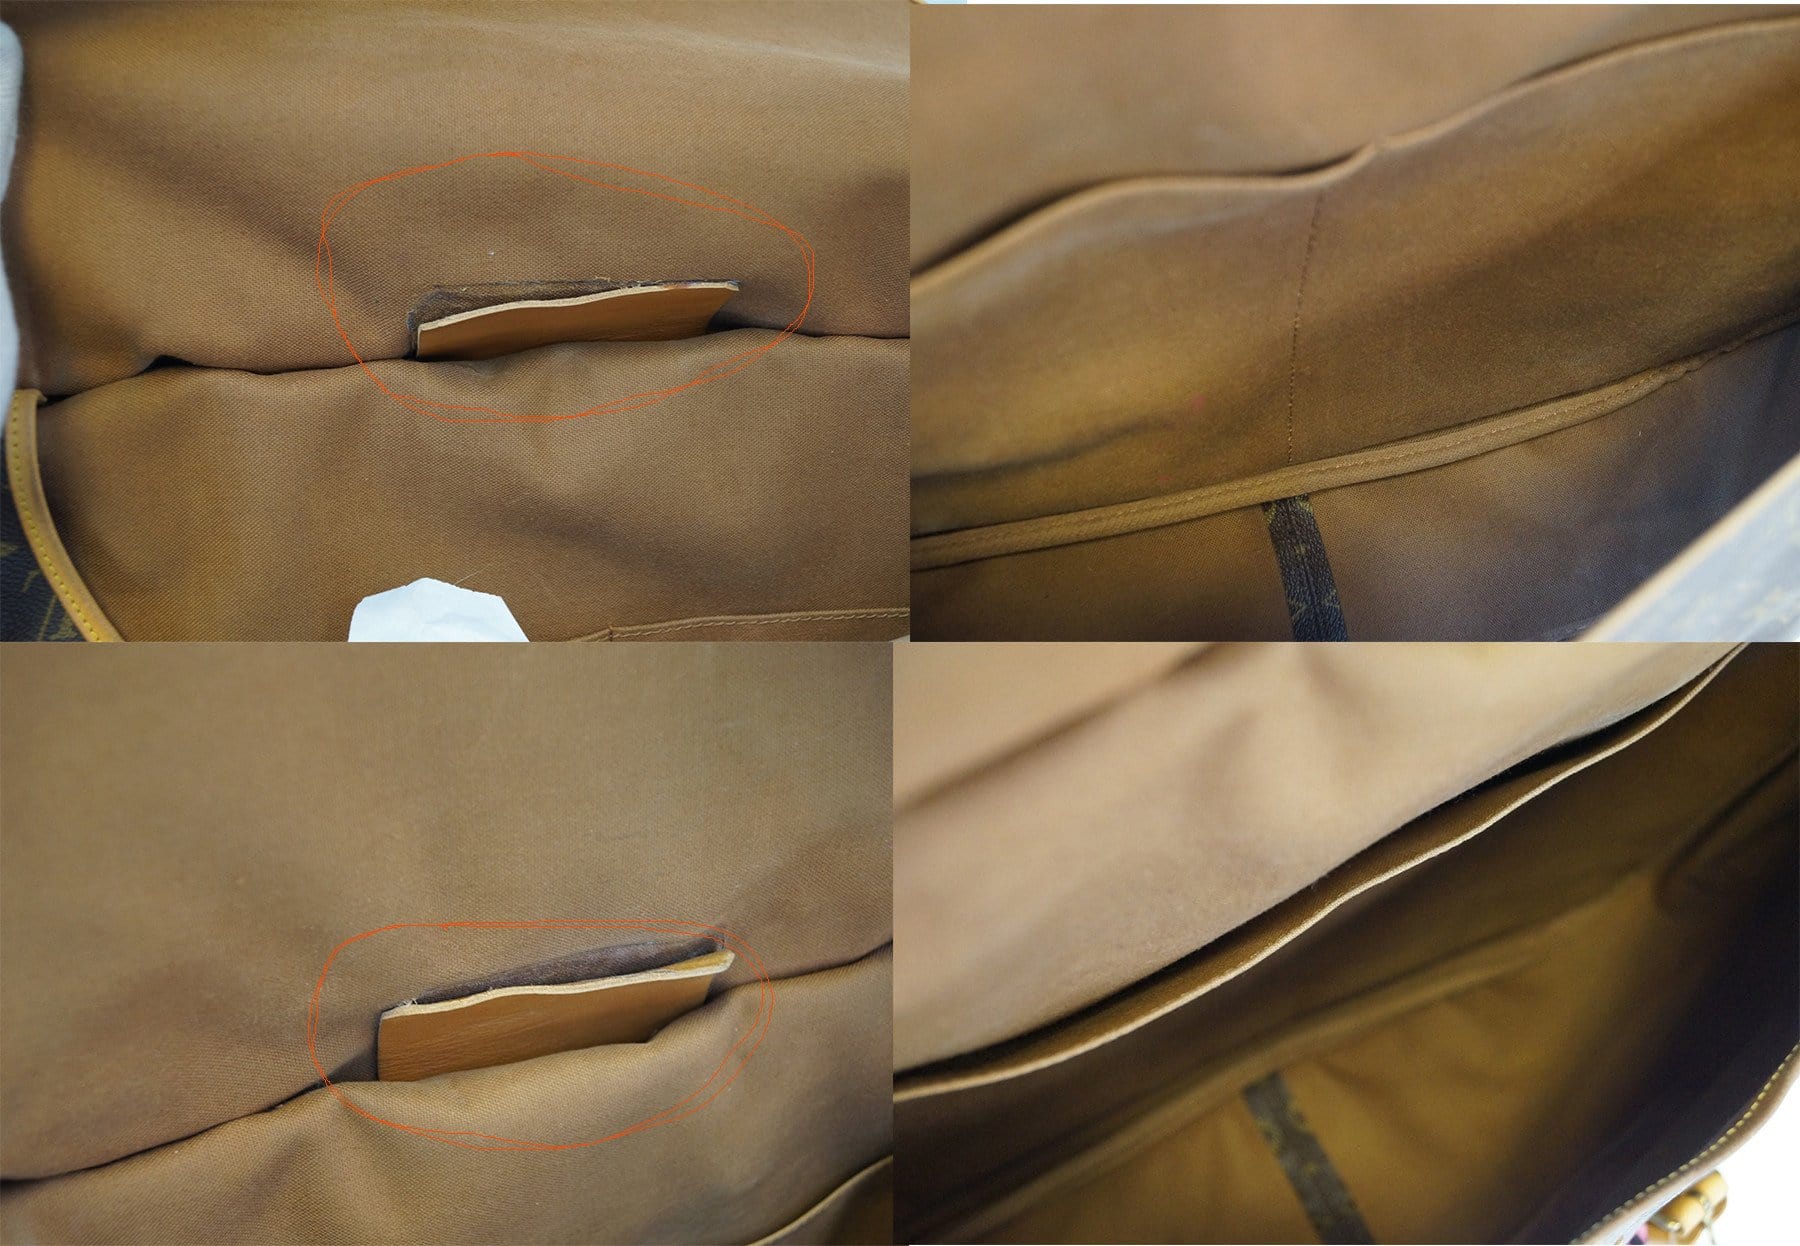 Louis Vuitton, Bags, Louis Vuitton Saumur 43 Shoulder Bag